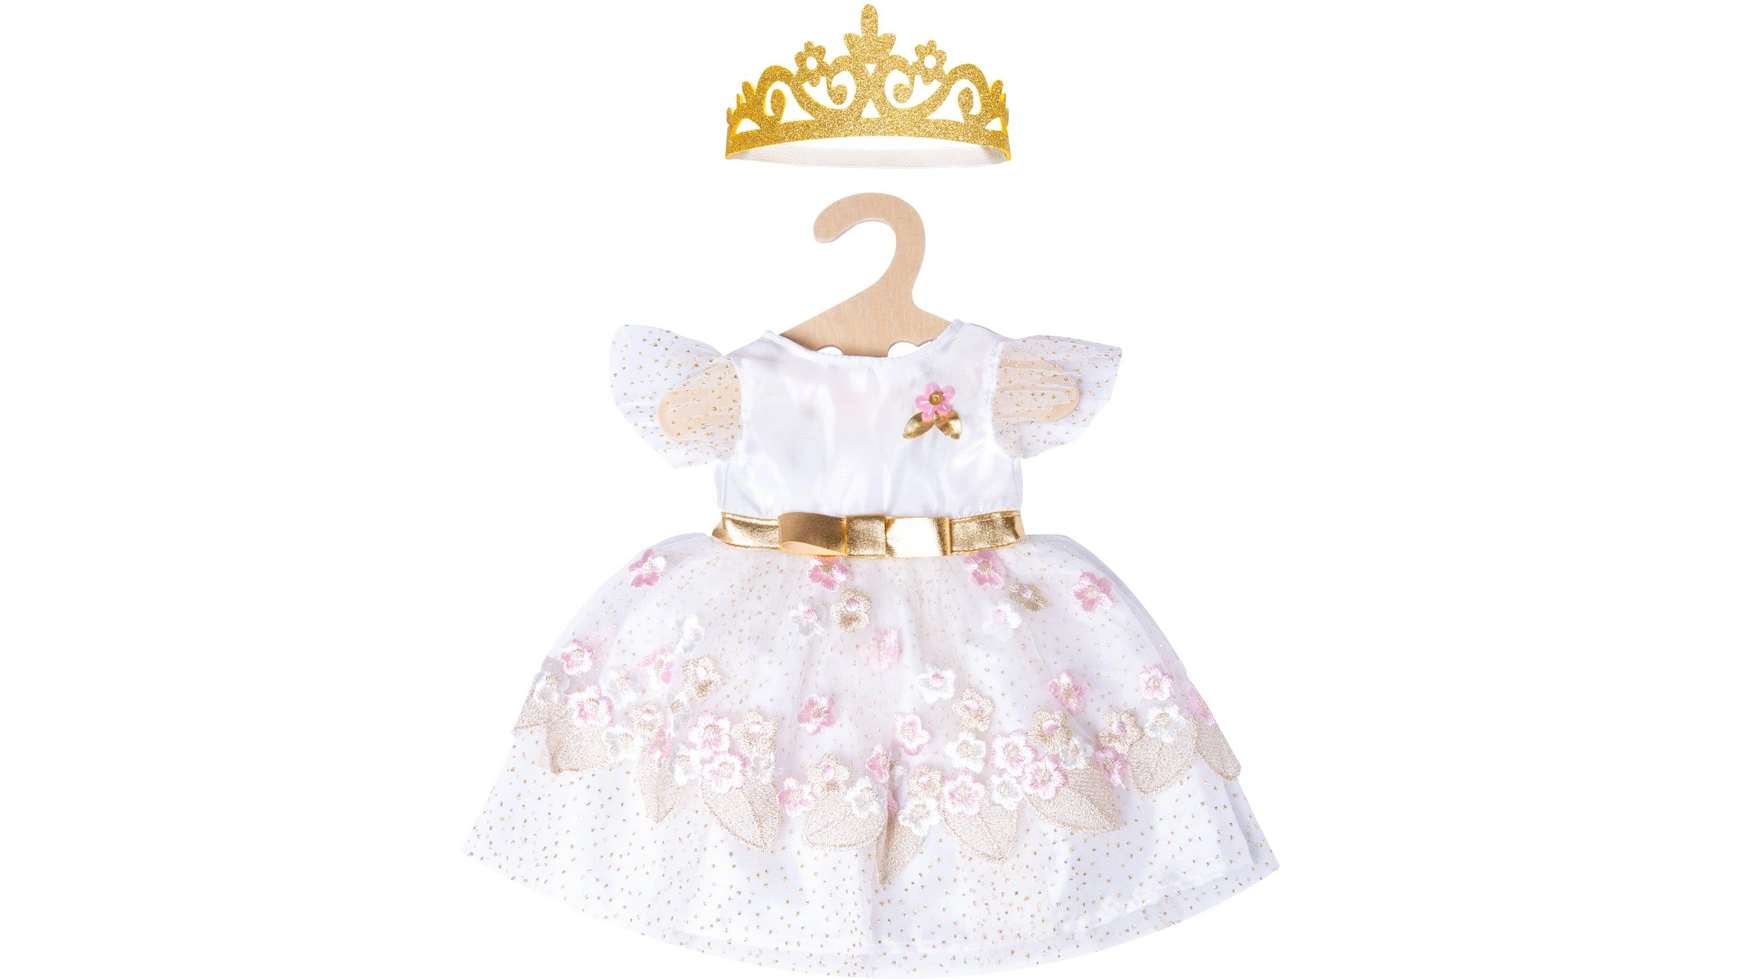 Платье принцессы вишневого цвета с золотой короной, размер 35-45см Heless